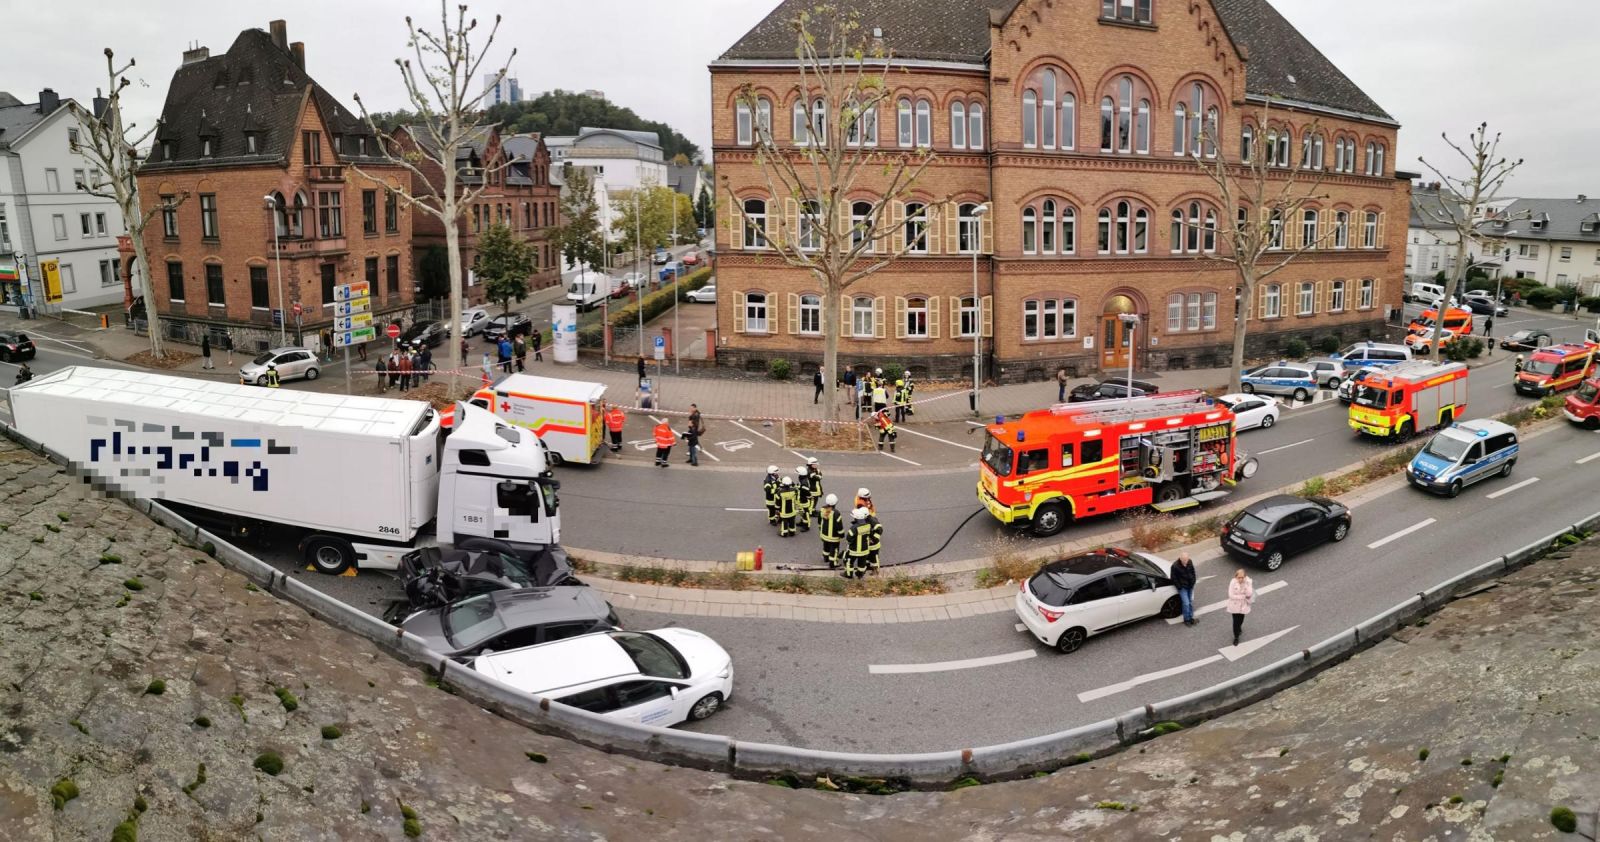 Теракт у Німеччині: вантажівка в'їхала в автомобілі на світлофорі, поранено 8 осіб. Фото: fnp.de